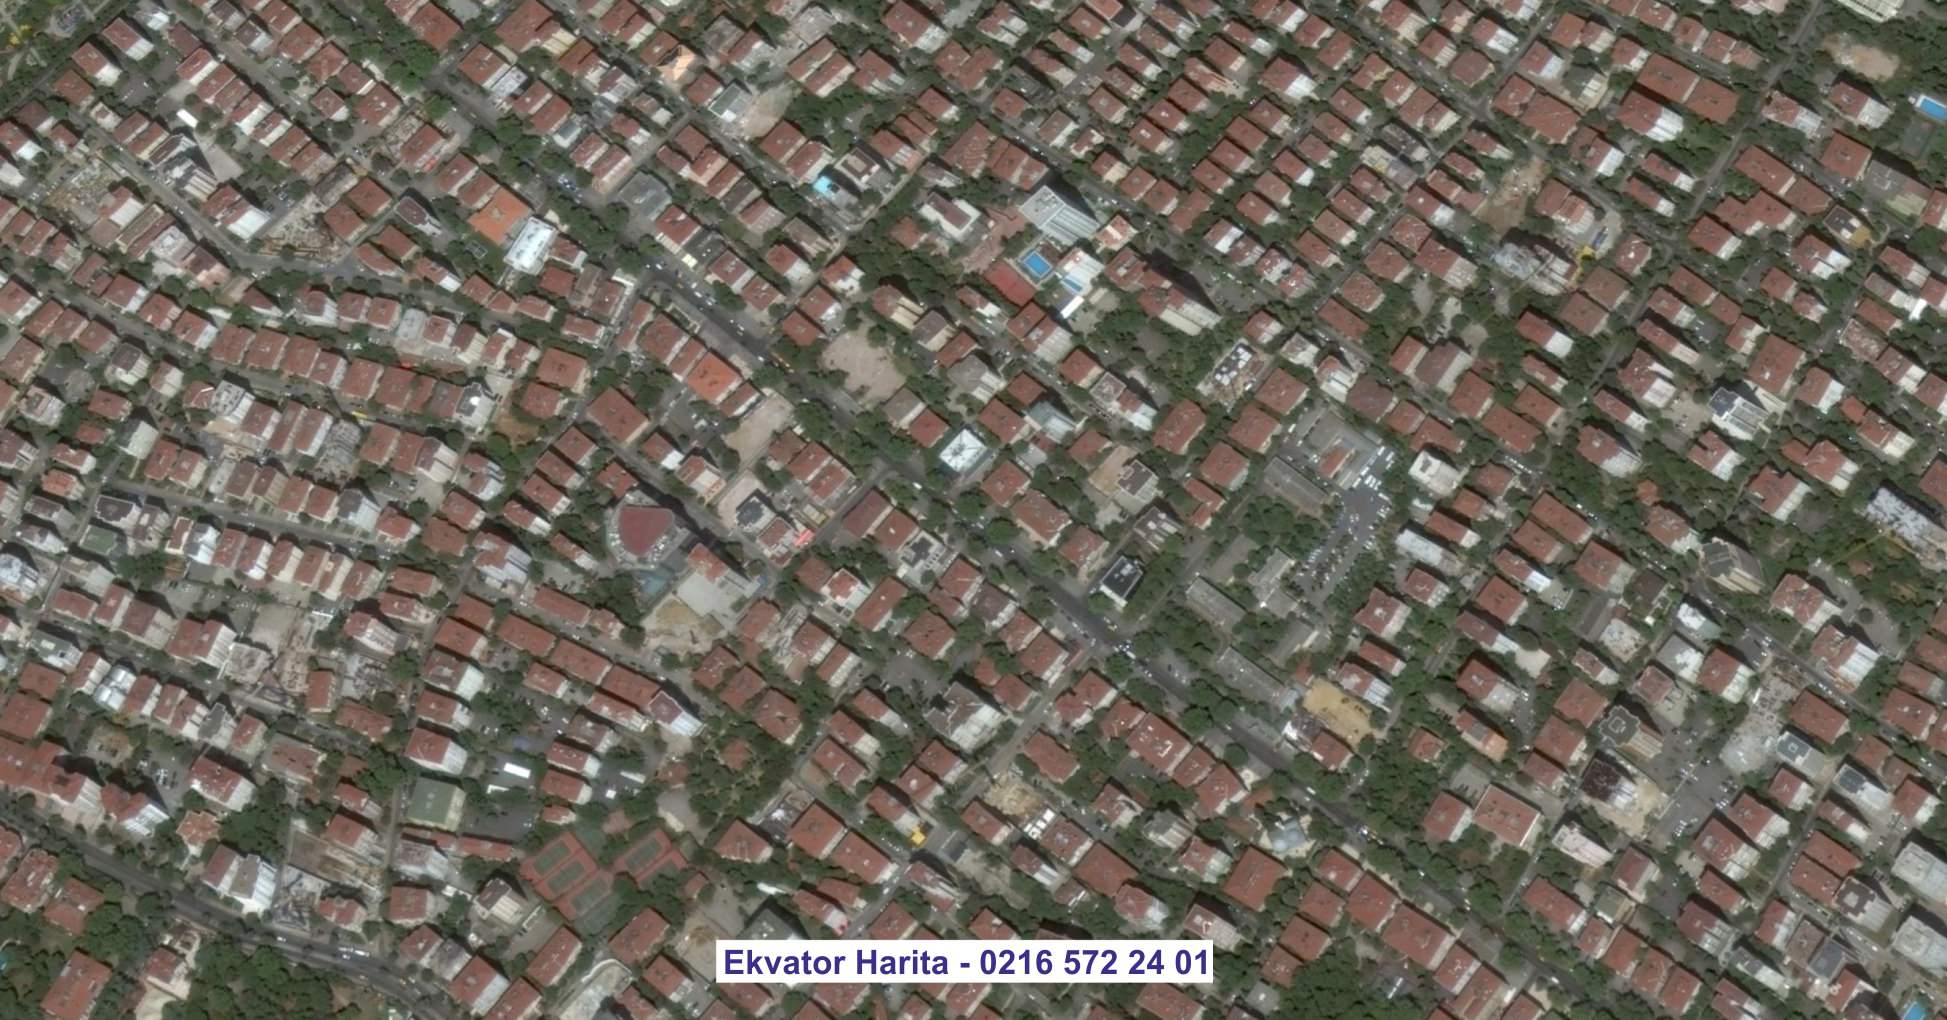 Bağdat Uydu Görüntüsü Örnek Fotoğrafı